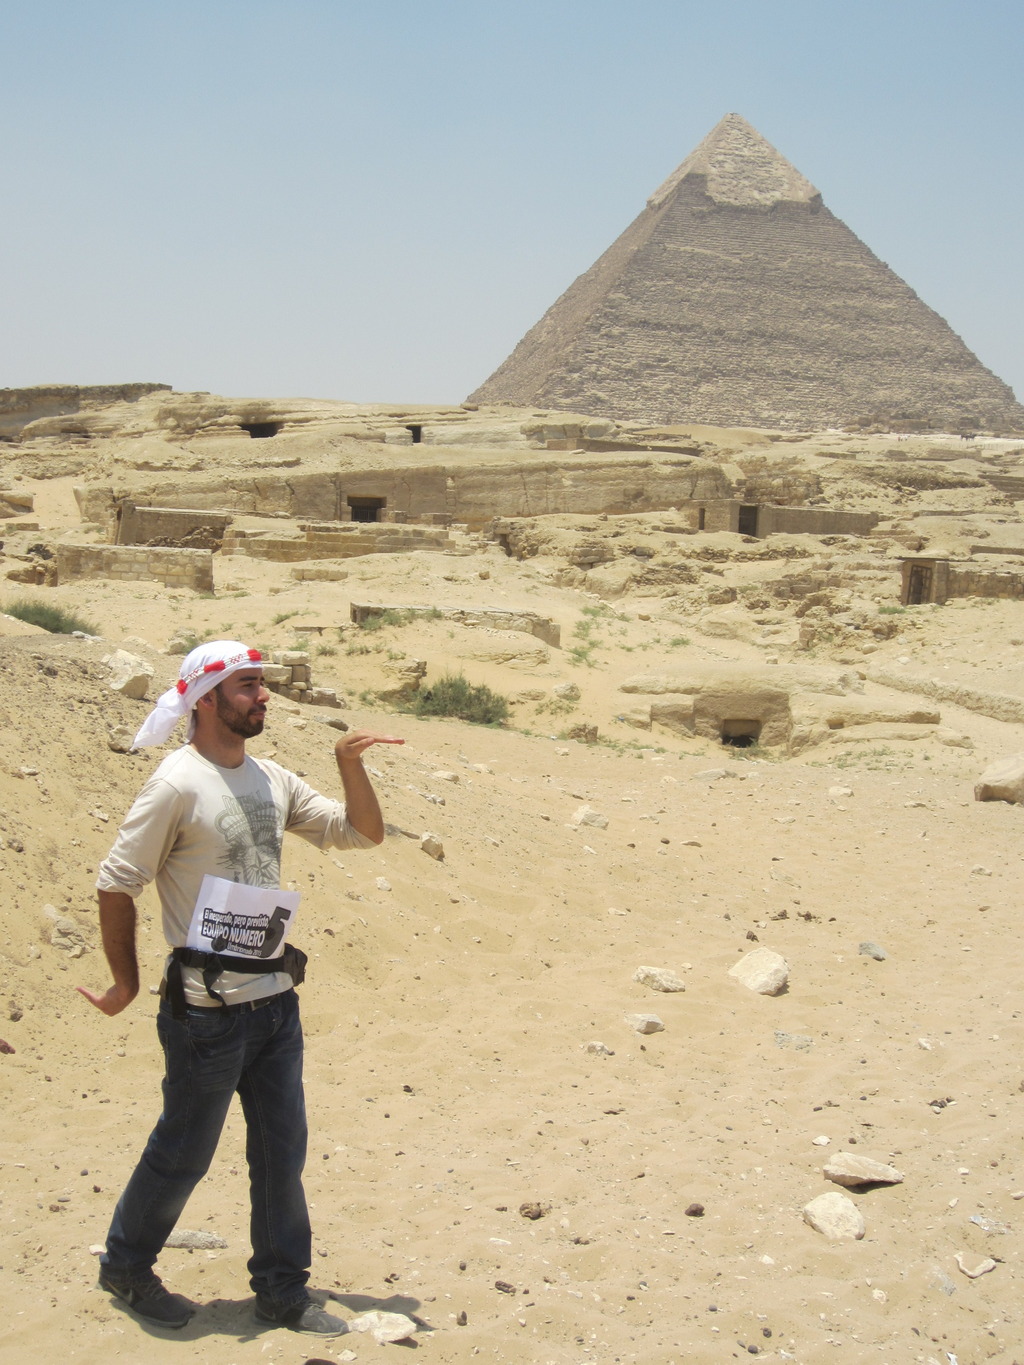 32. Con una pirámide que no sea un d4, poniendo pose de egipcio.